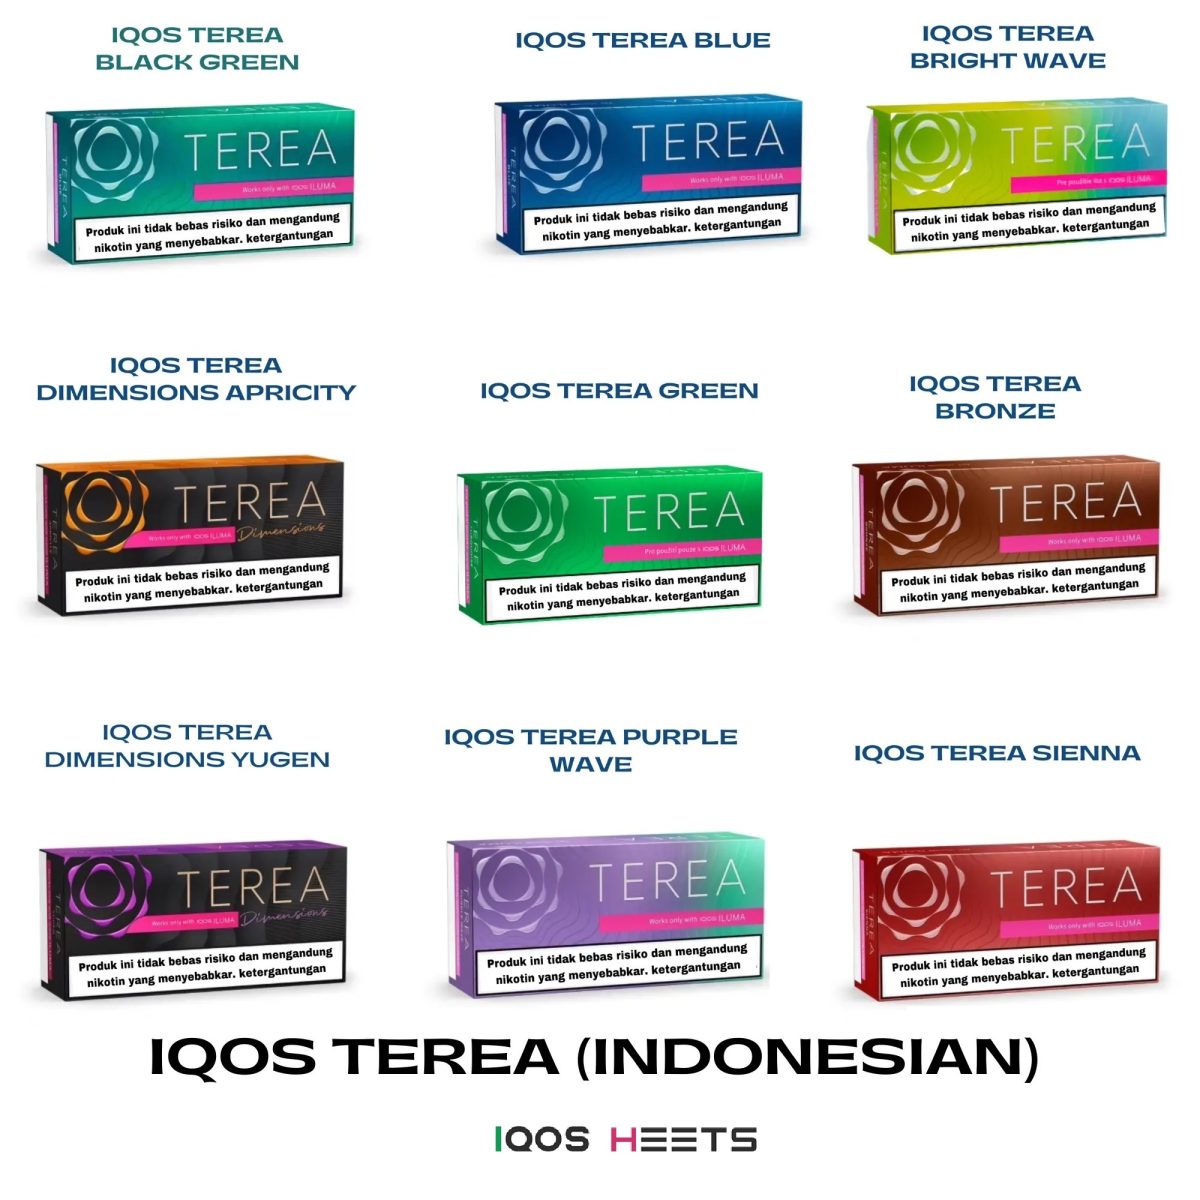 IQOS TEREA HEETS INDONESIAN